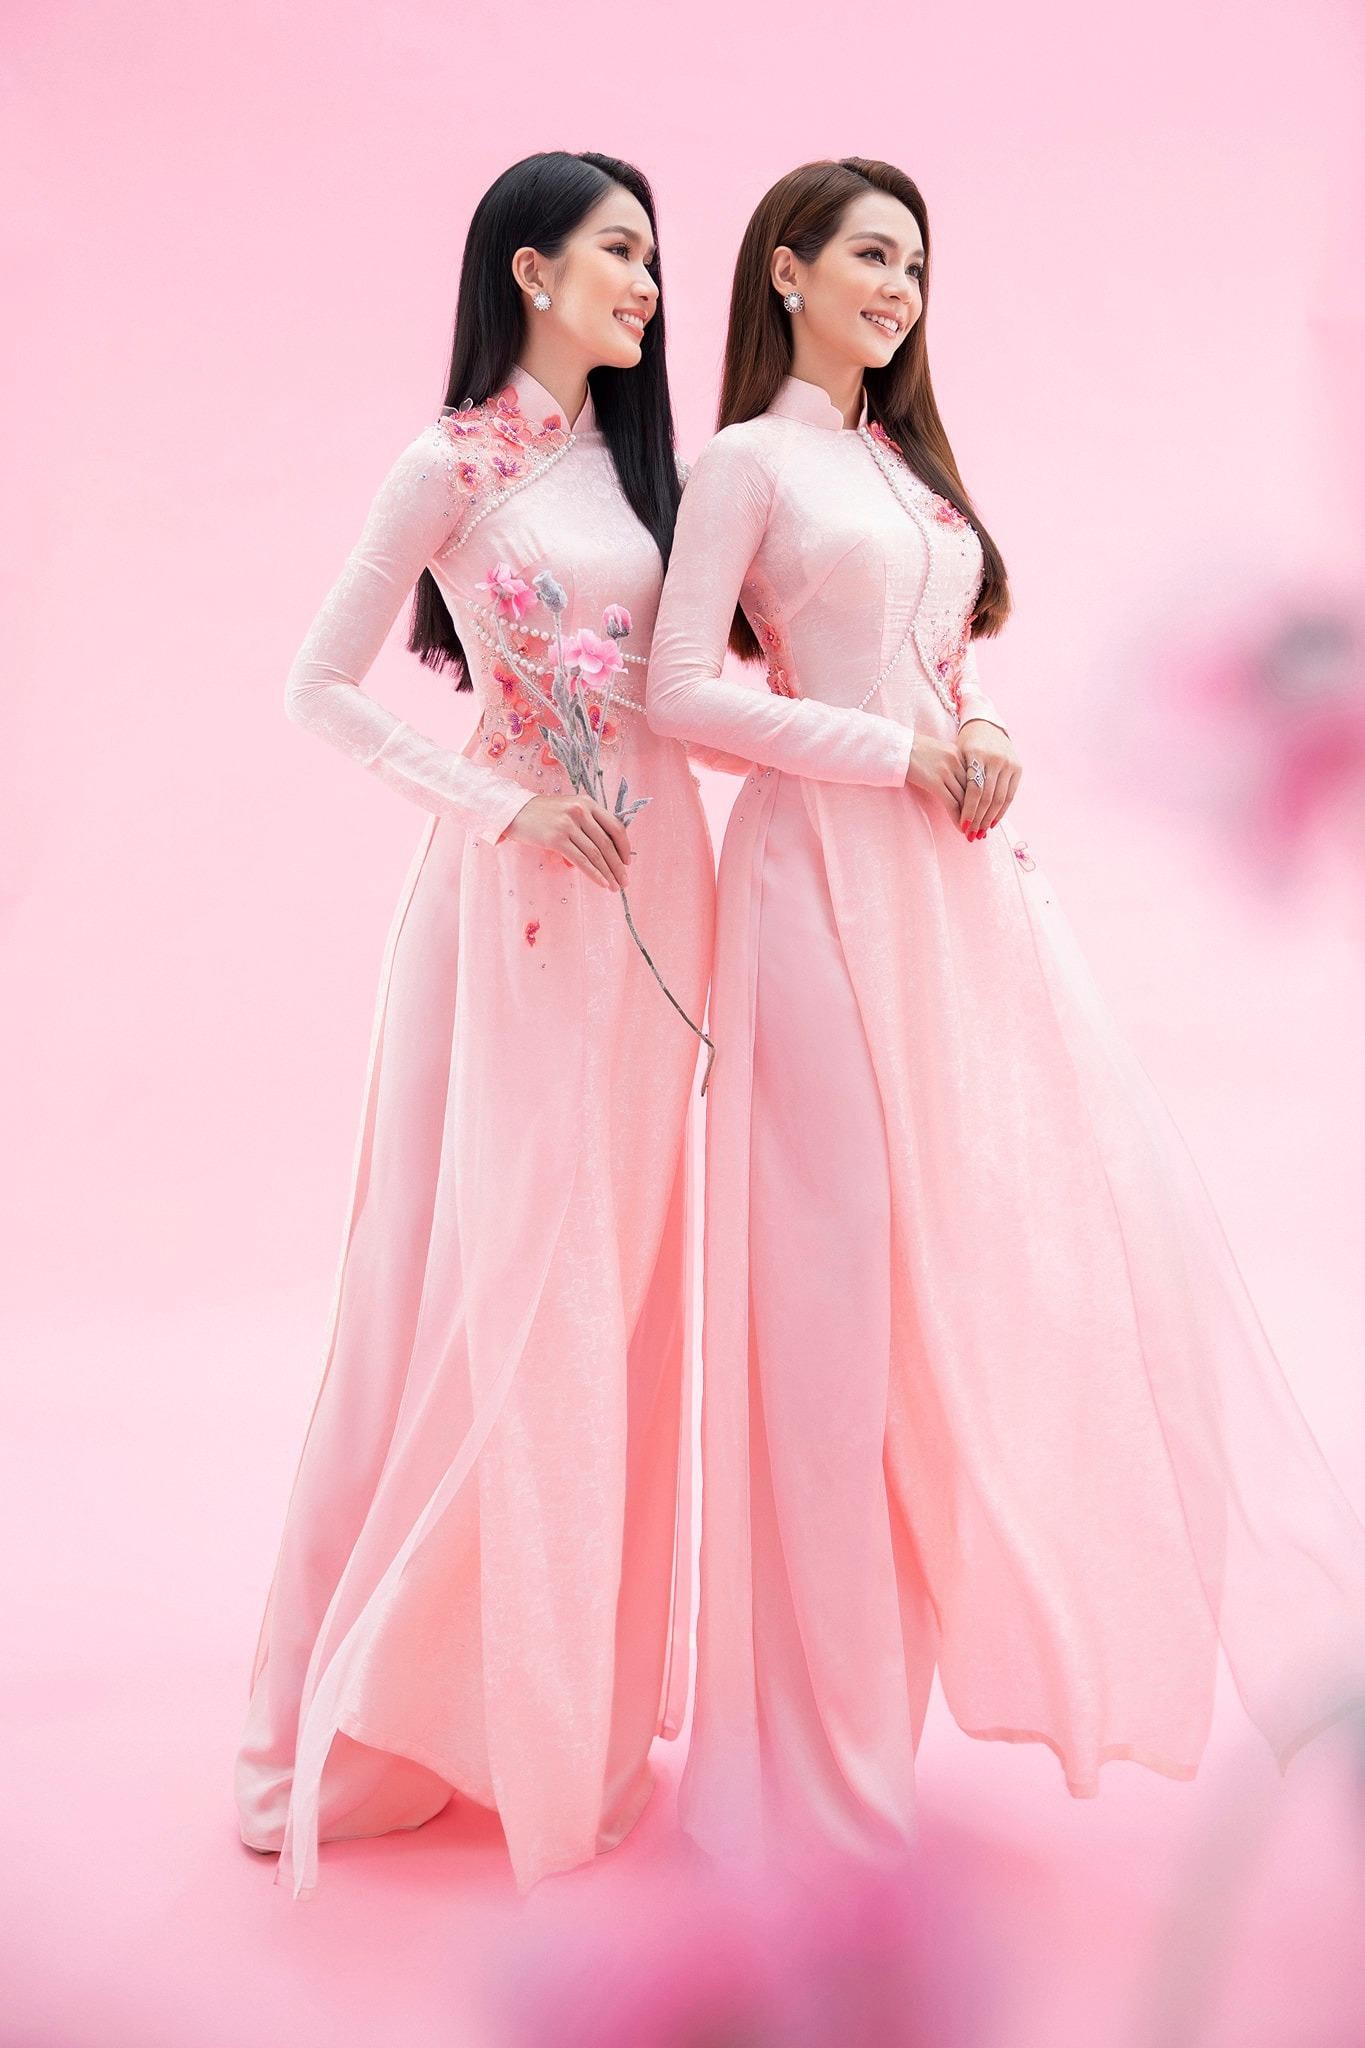 Dàn Hoa hậu đình đám thế giới khoe nhan sắc xinh đẹp với áo dài khi đến Việt Nam - Ảnh 9.